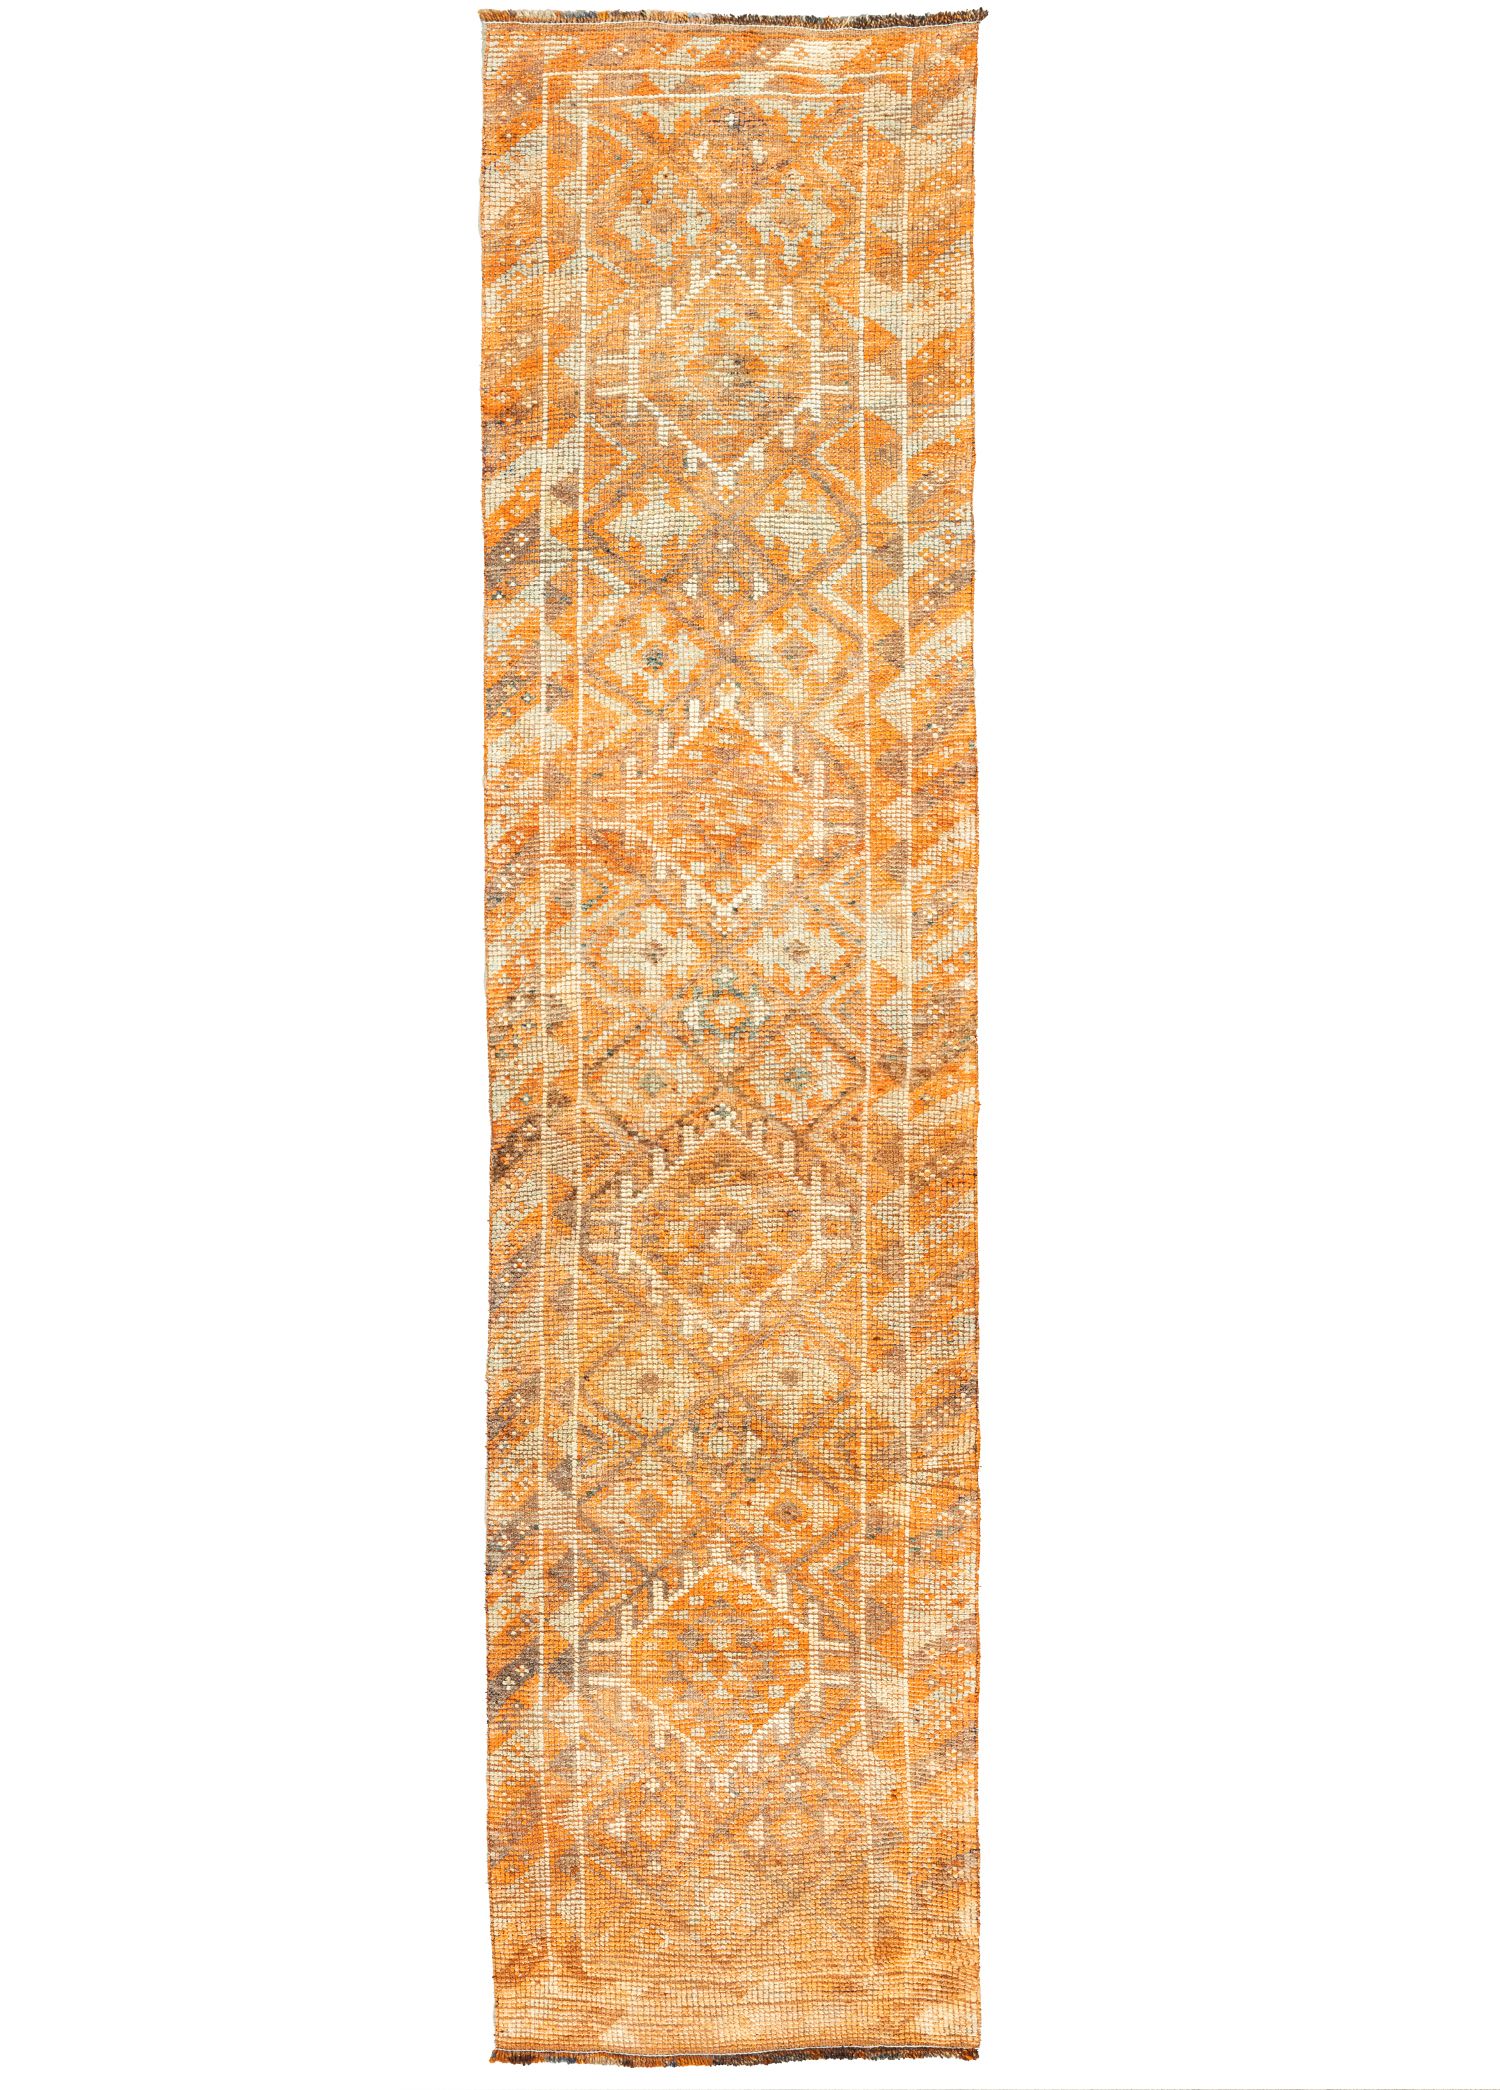  Eldar Handwoven Orange Wool Herki Runner 79x344 cm